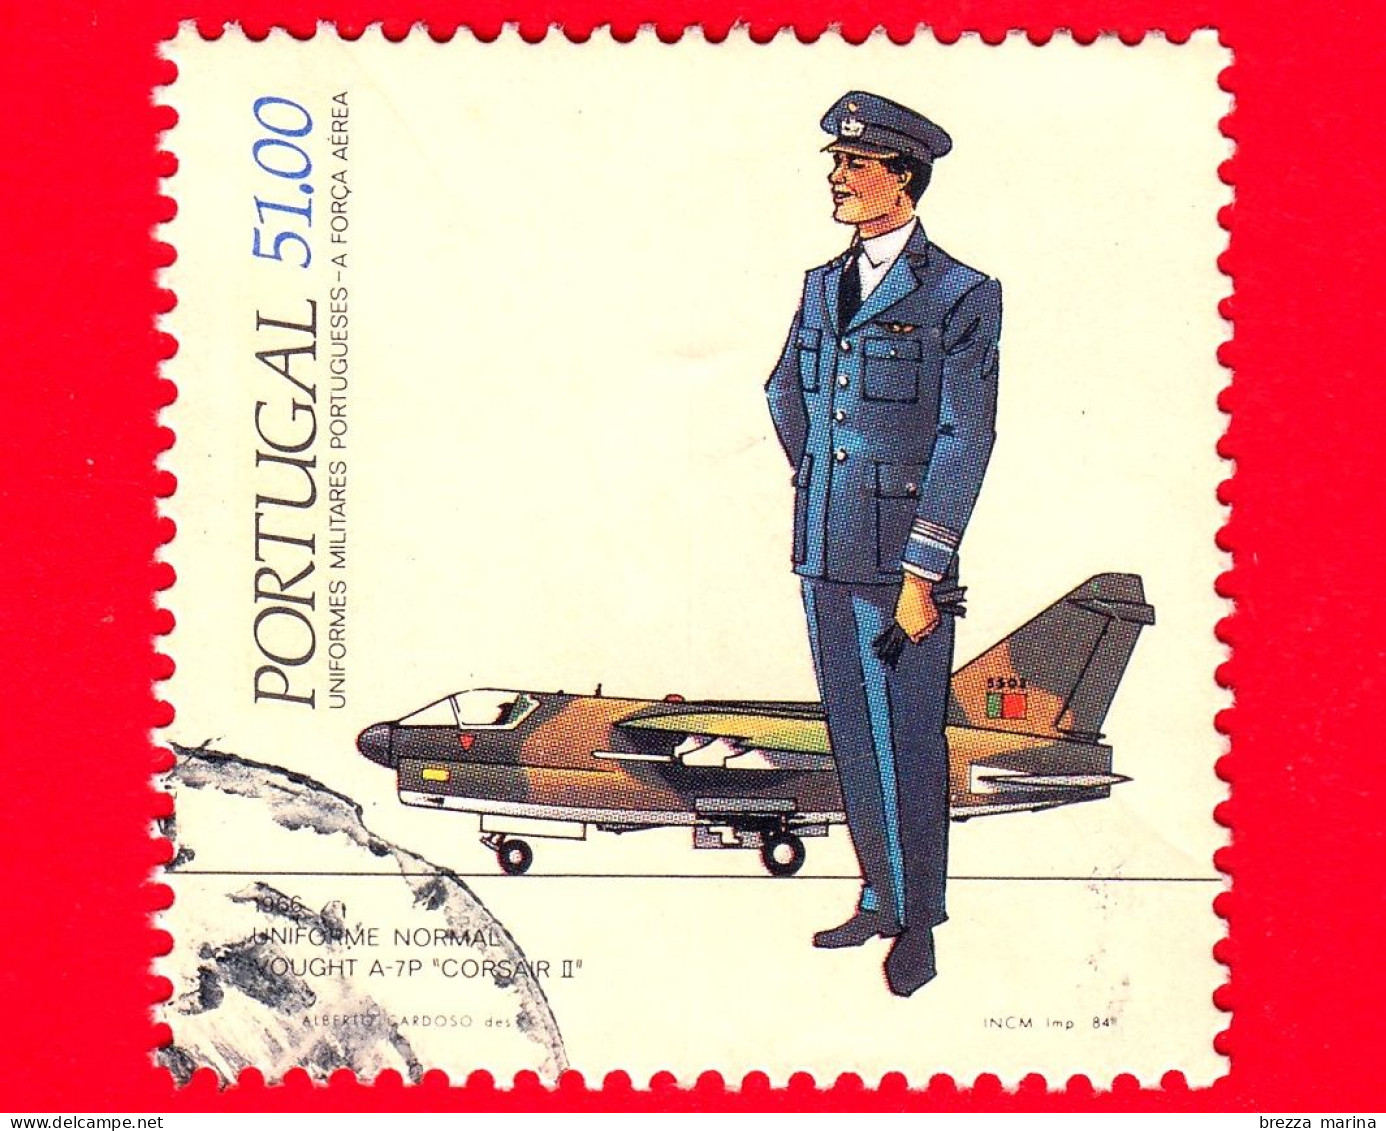 PORTOGALLO - Usato - 1984 - Uniformi Militari Portoghesi - Aeronautica - Corsair II - 51.00 - Usado